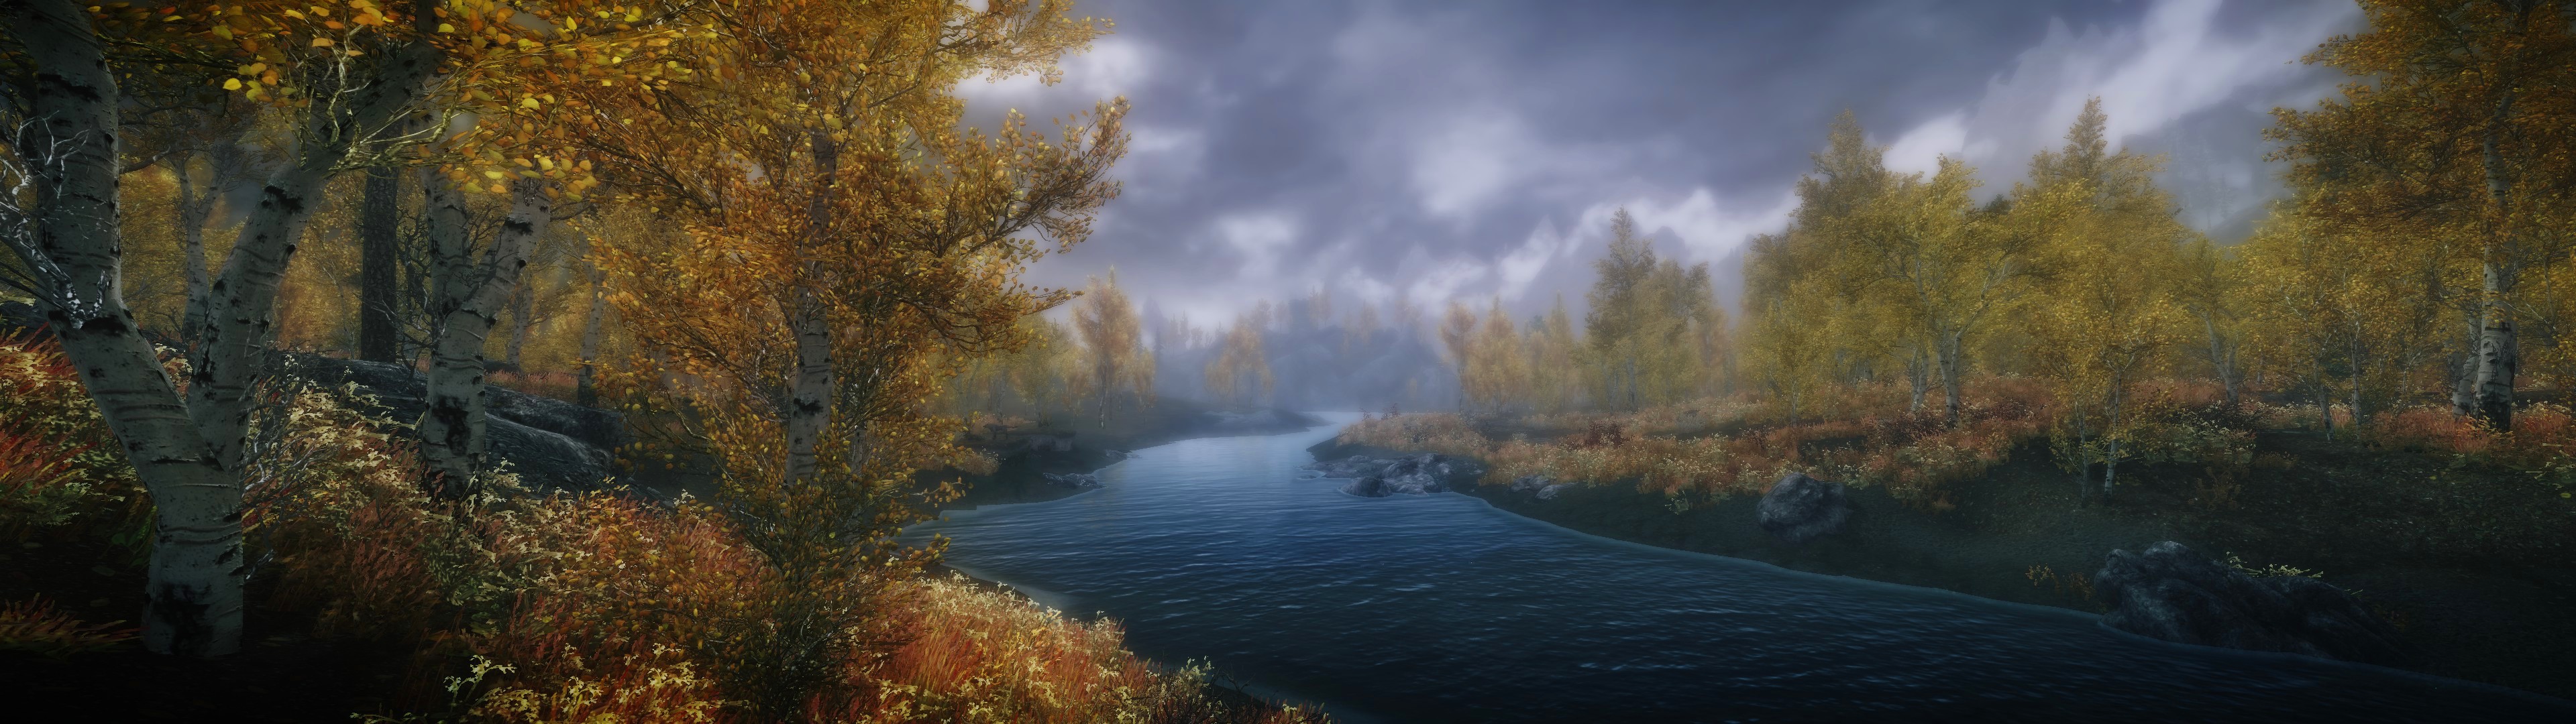 General 3840x1080 The Elder Scrolls V: Skyrim nature landscape multiple display RPG river video games PC gaming screen shot